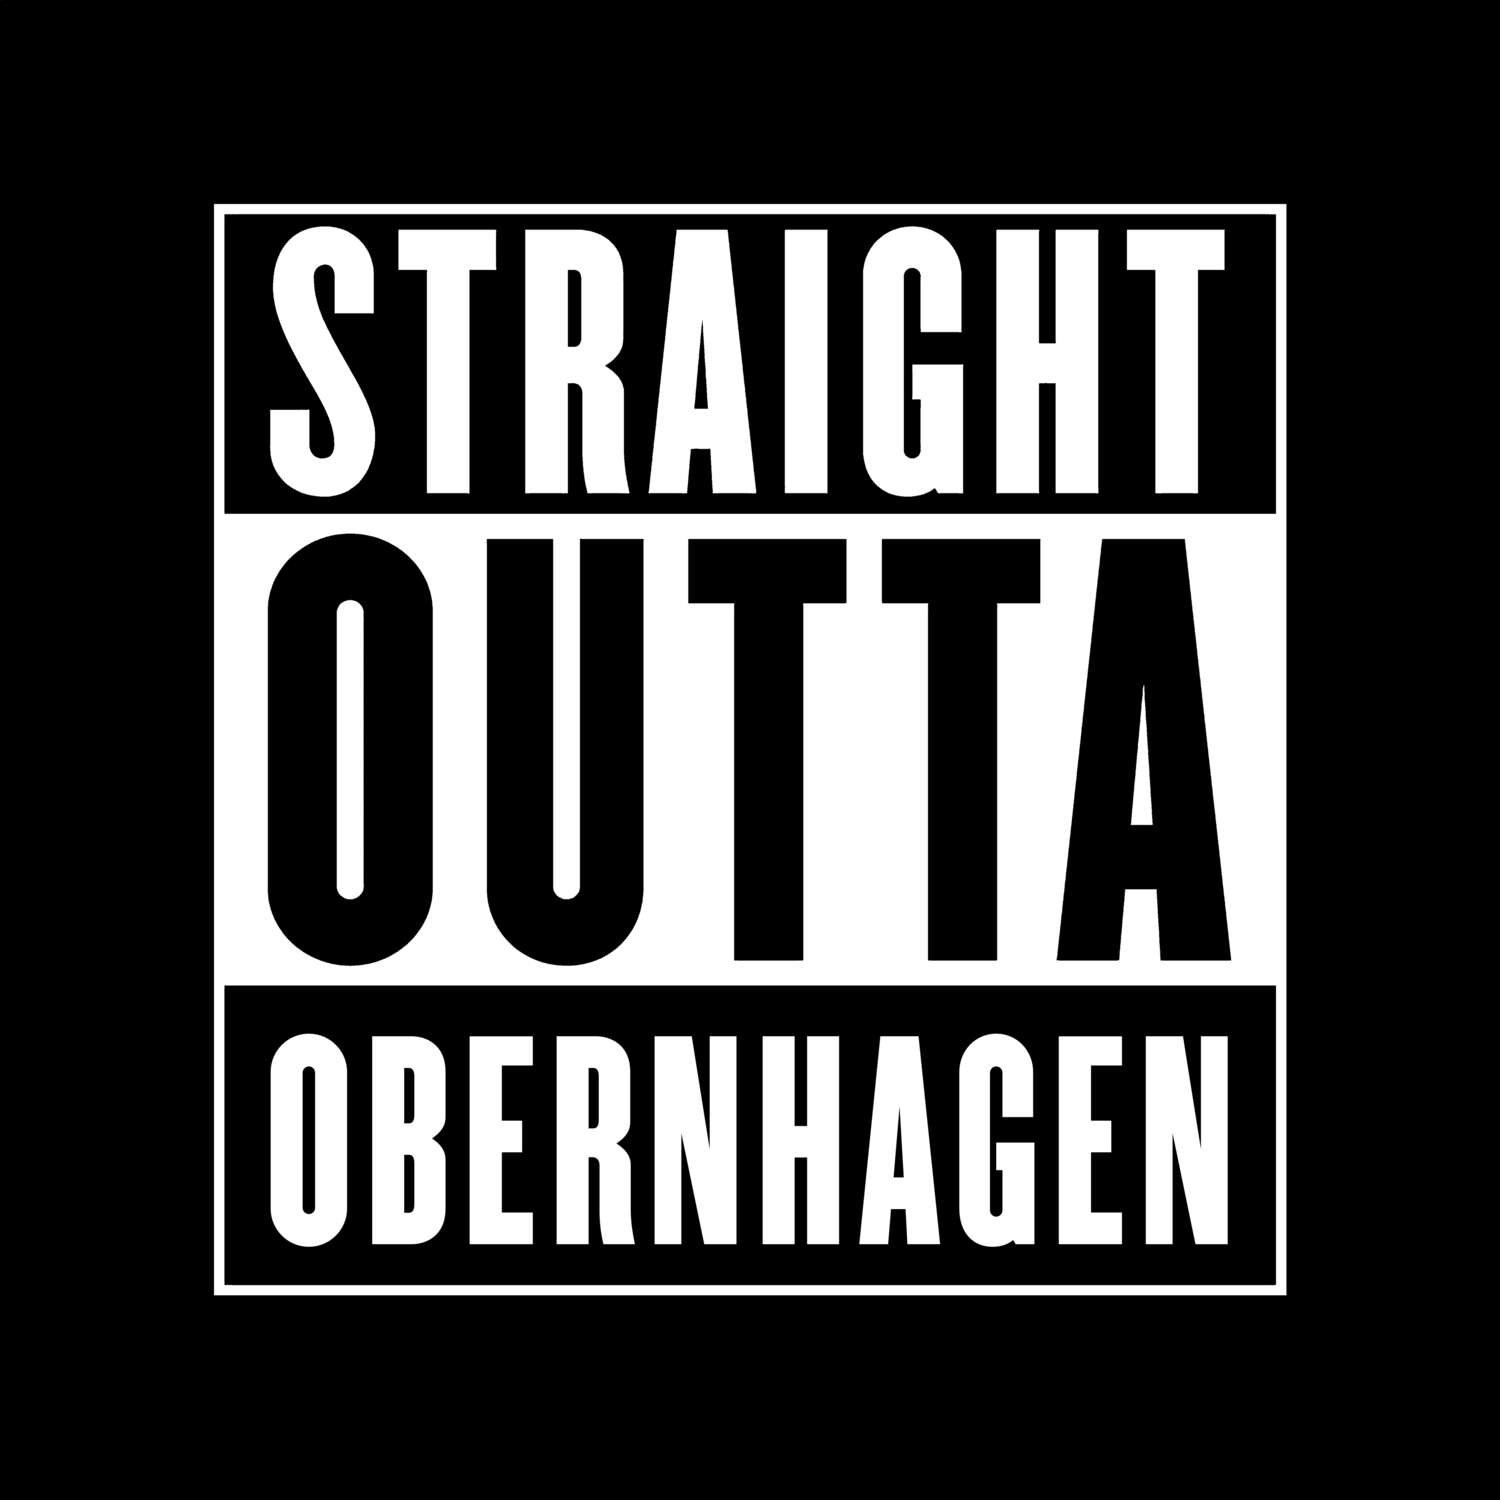 Obernhagen T-Shirt »Straight Outta«